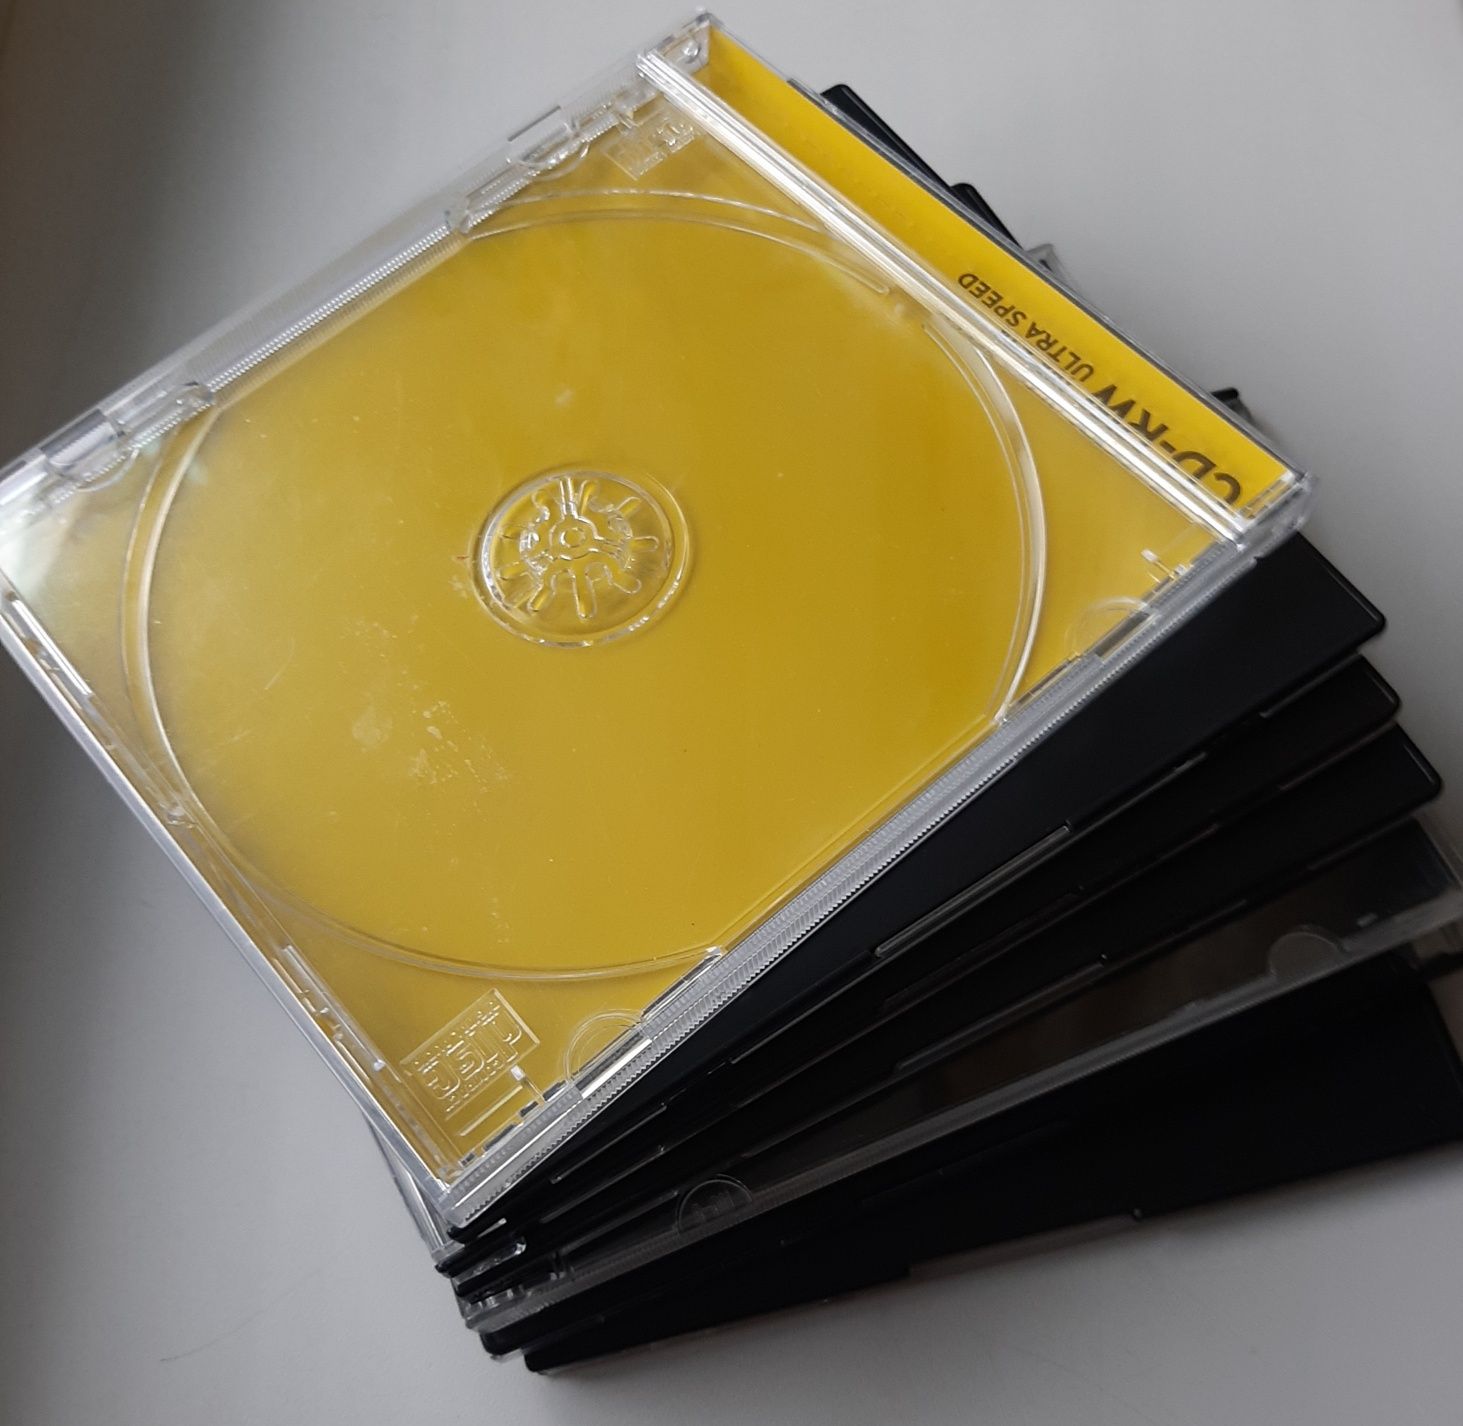 Диск CD - Дмитрий Красноухов "Рождение Ангела" и коробки для дисков.